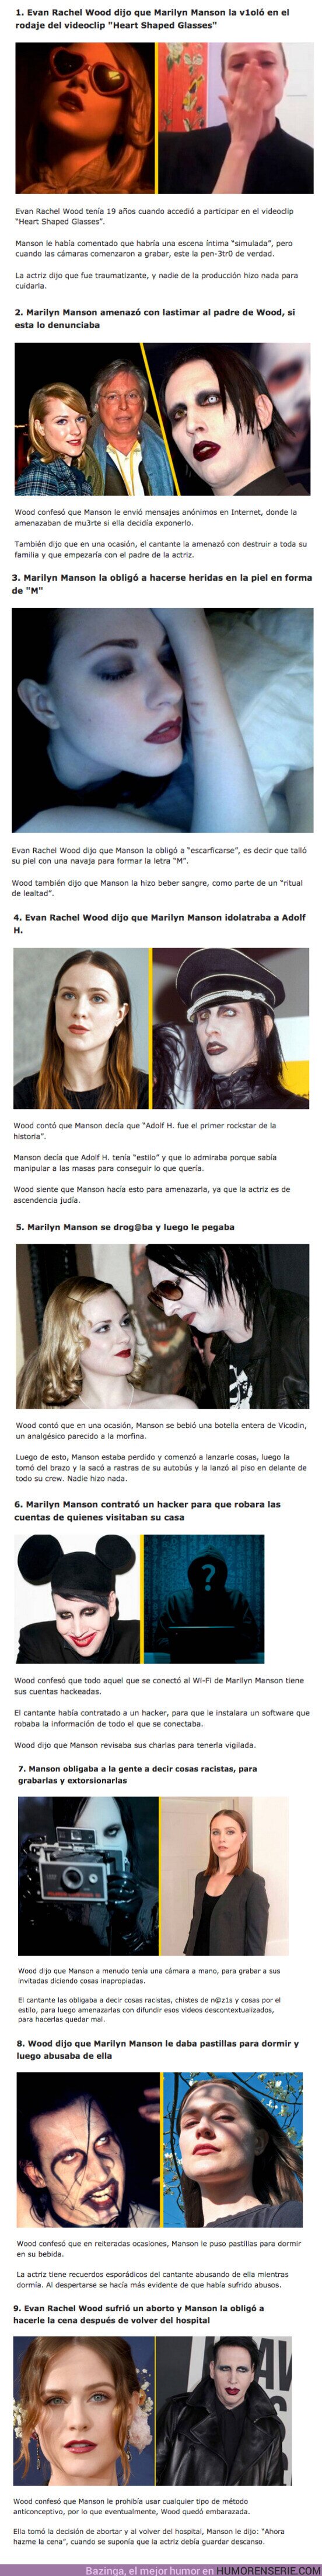 93675 - GALERÍA: Evan Rachel Wood reveló las 9 Atrocidades que Marilyn Manson le hizo durante su relación